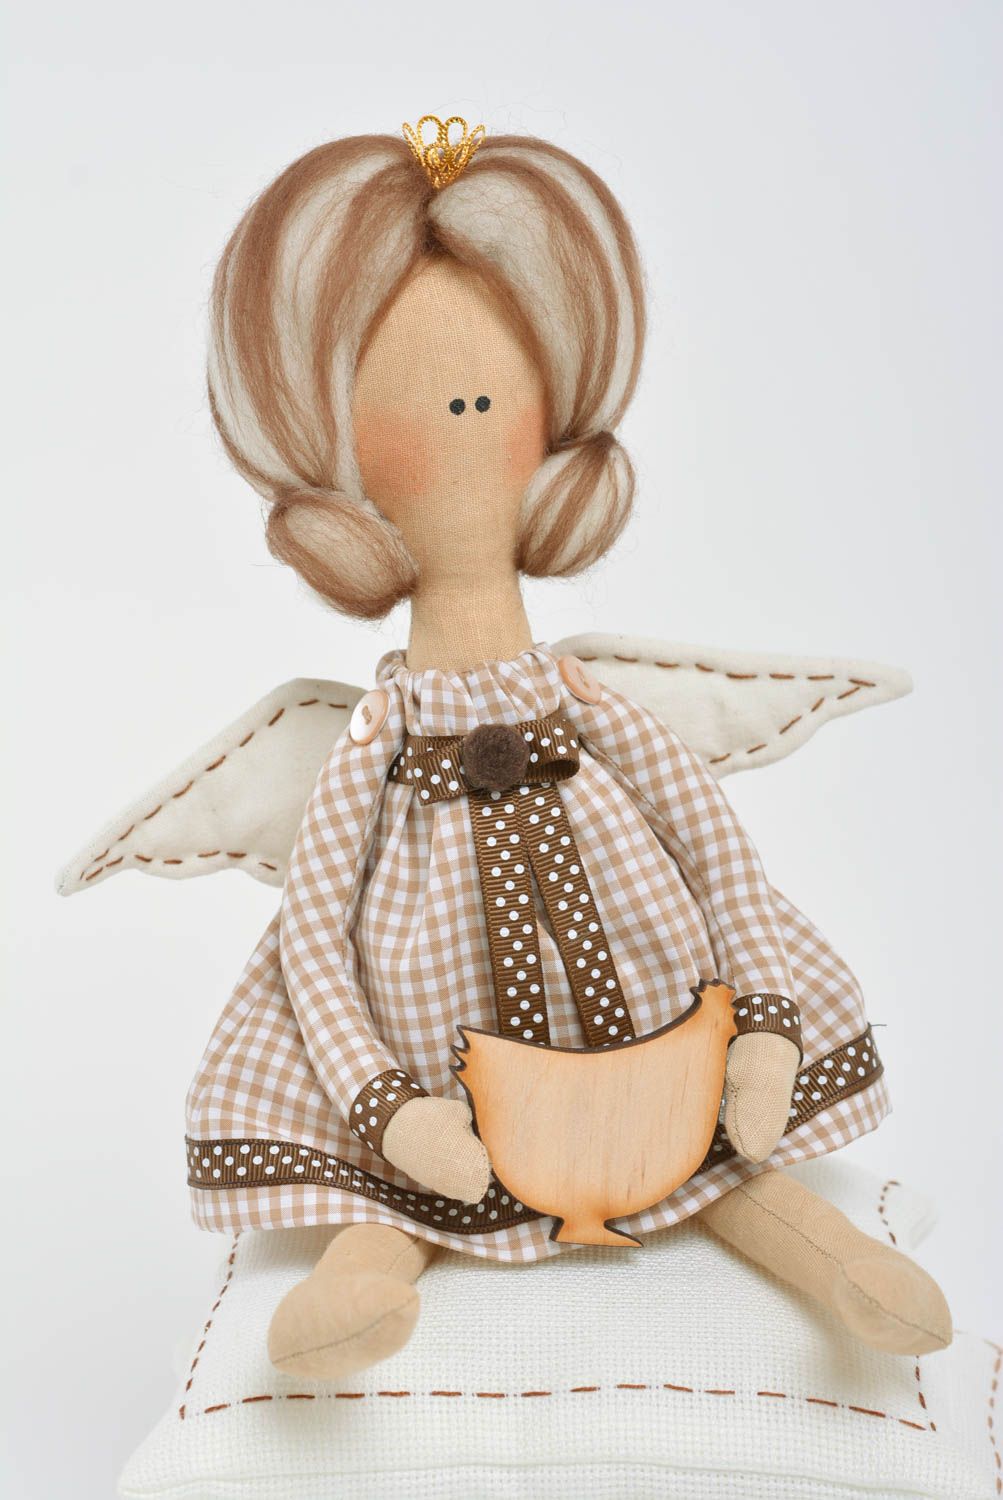 Мягкая игрушка ручной работы принцесса на горошине из льна и хлопка для декора фото 2